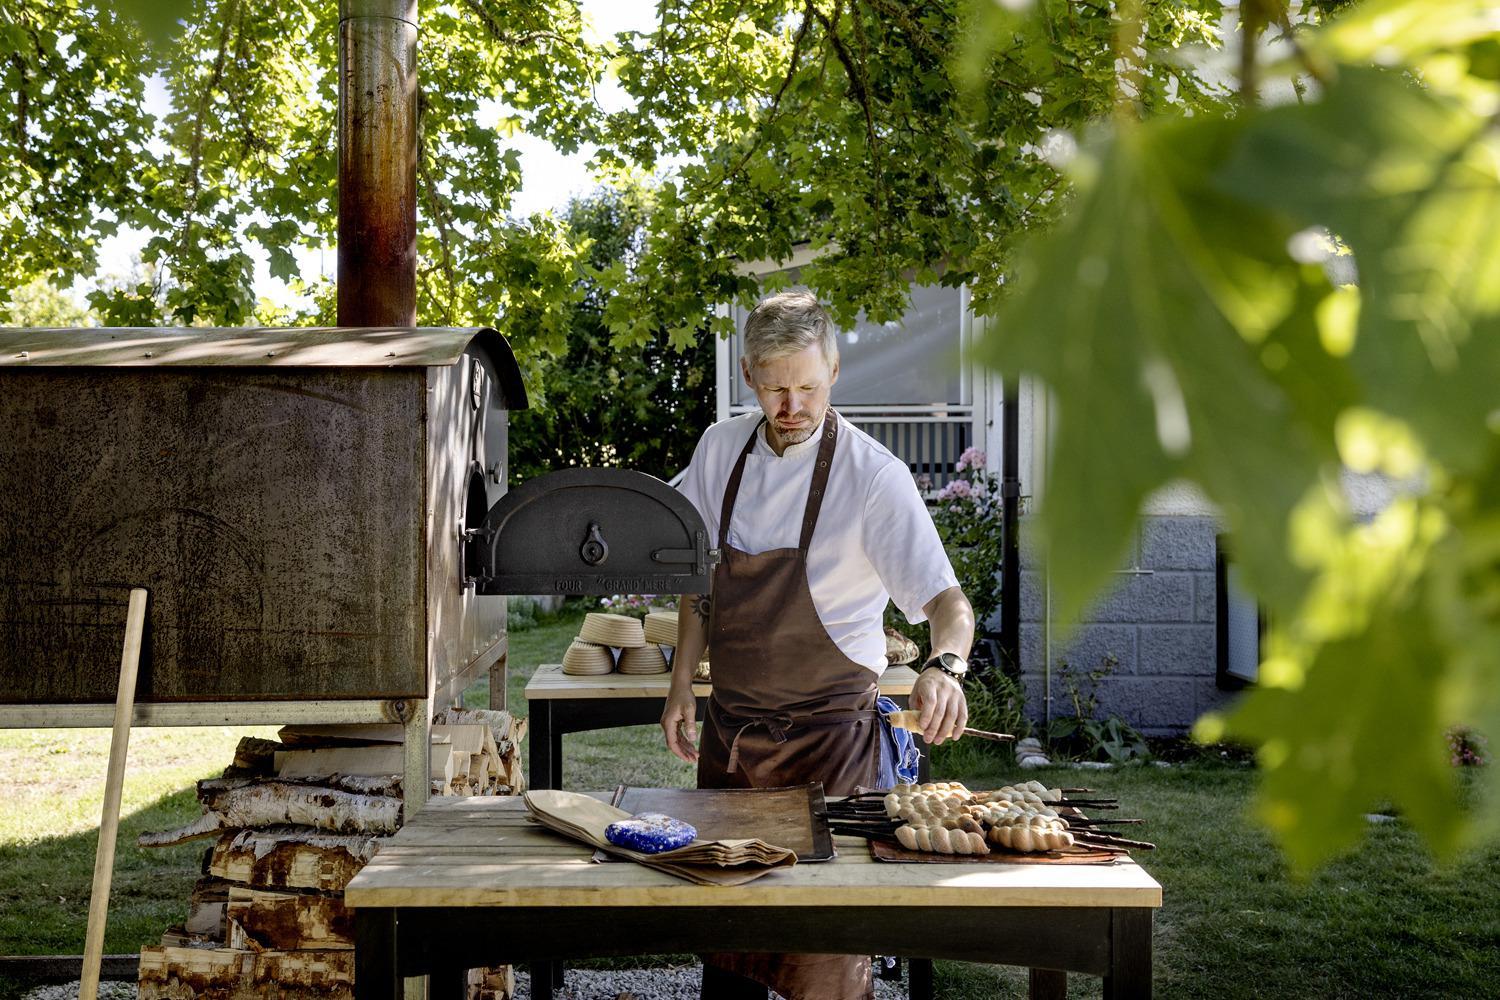 Un chef cuisinier est debout à côté d'un four à bois dans un jardin.